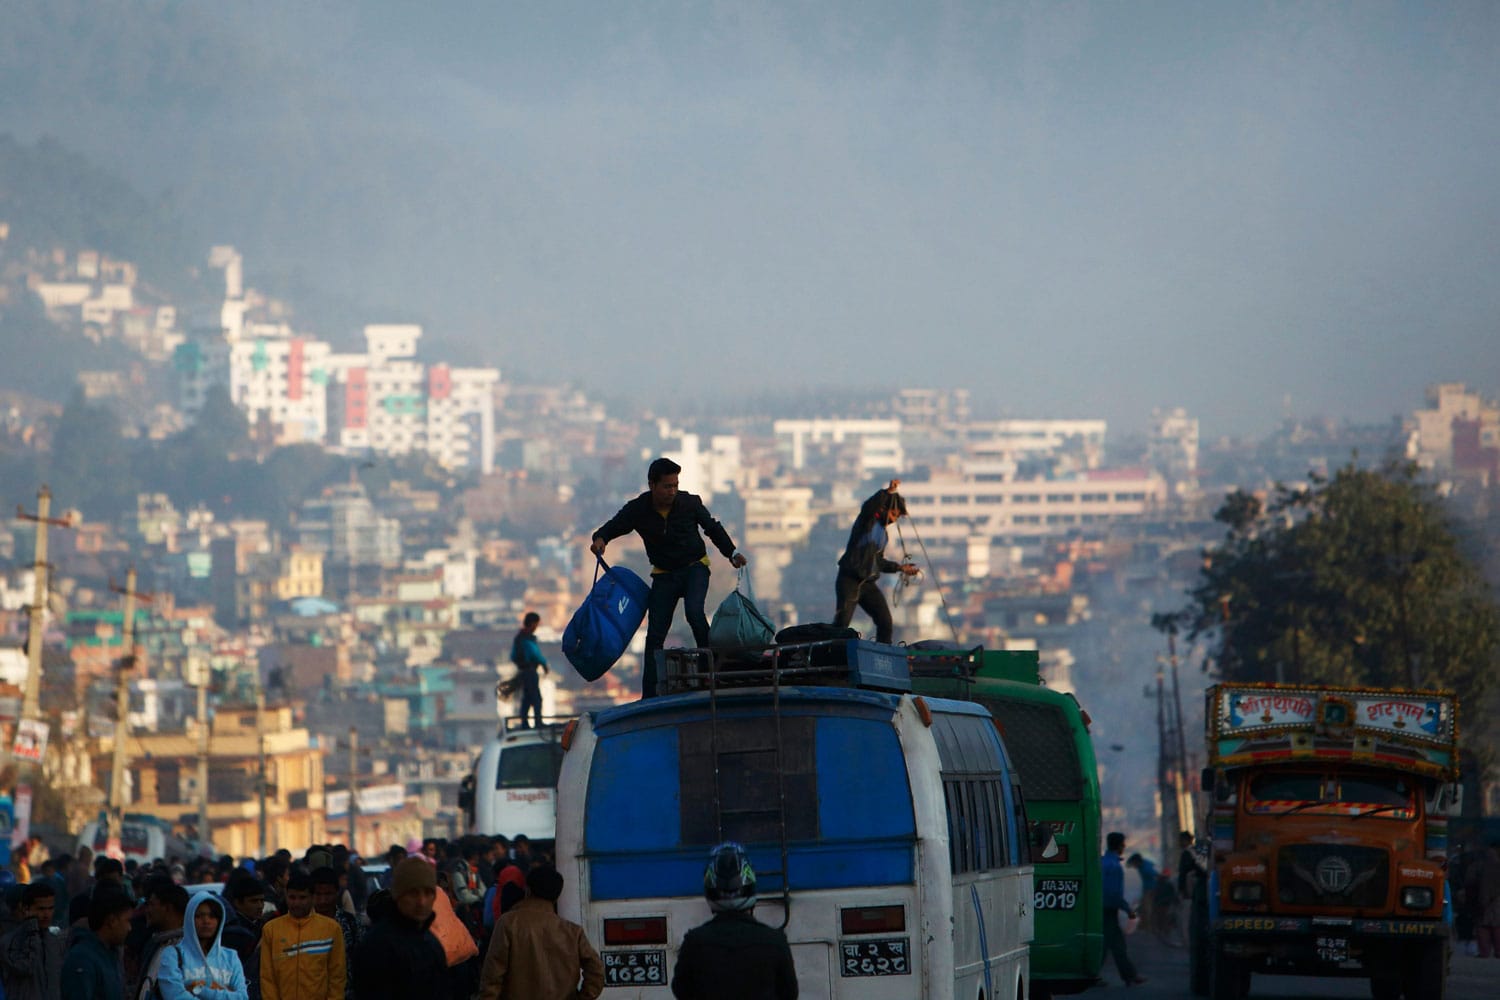 La huelga general en Nepal provoca disturbios, incidentes violentos y detenidos